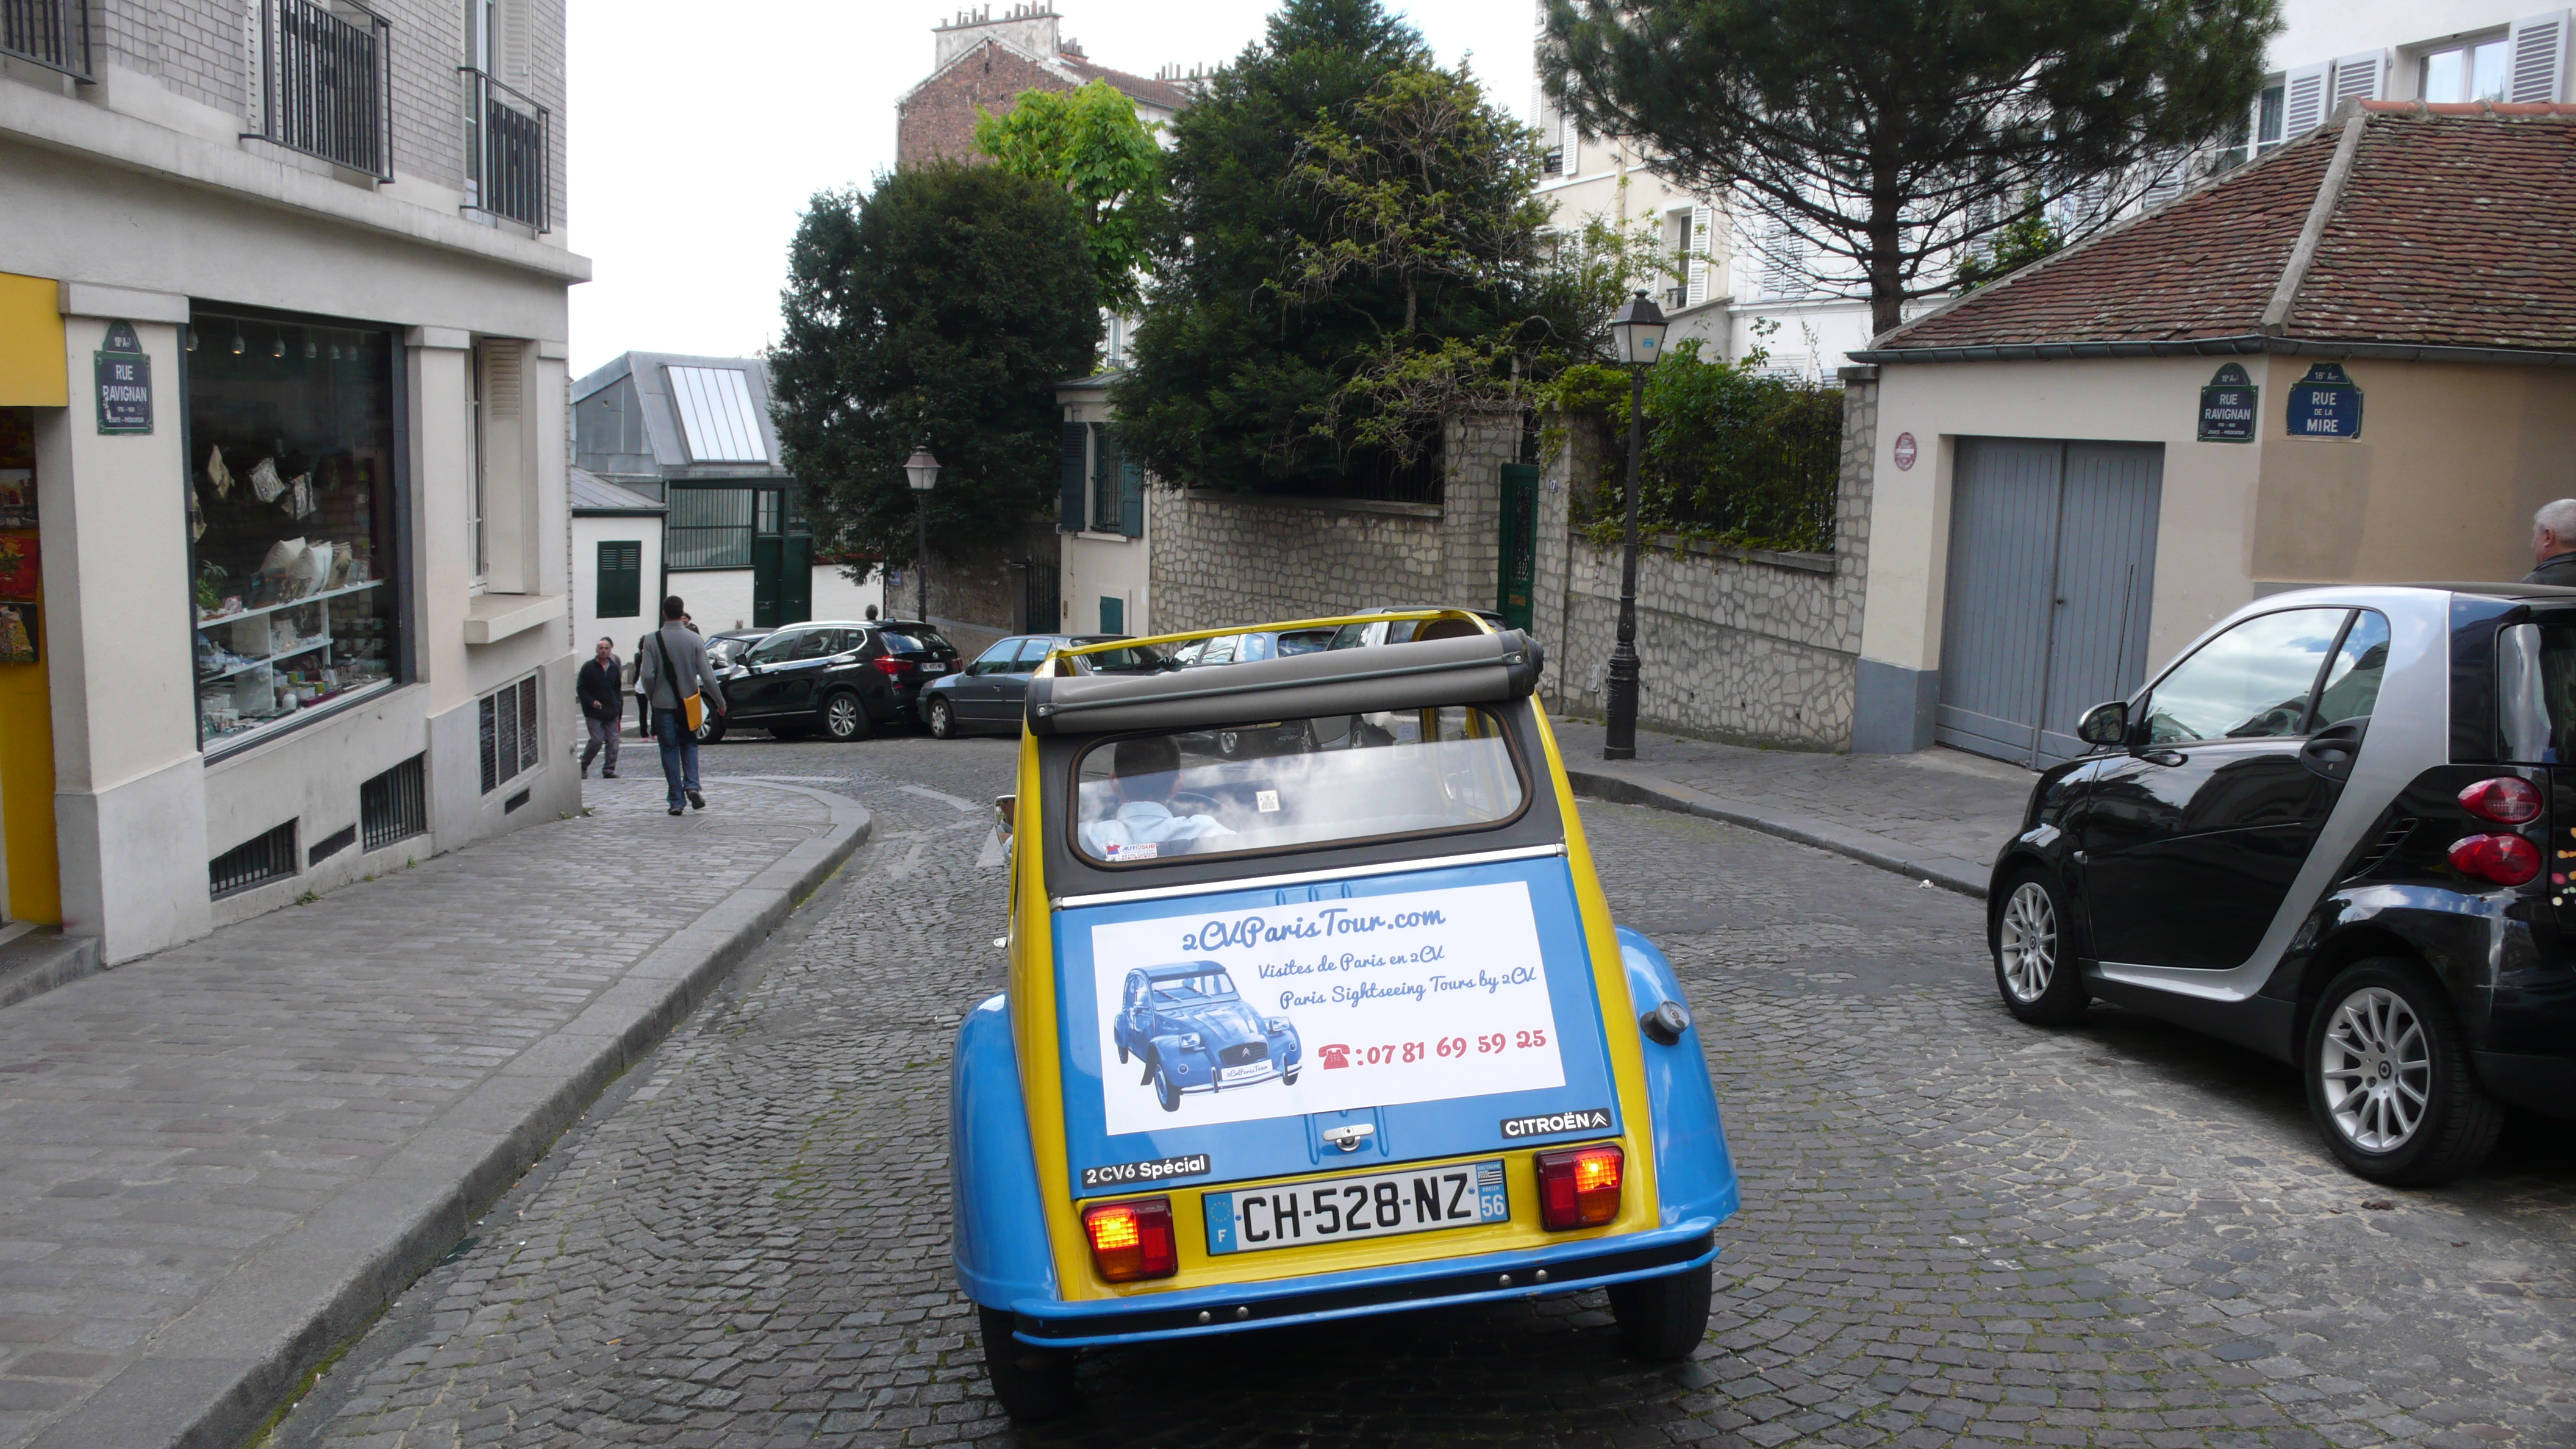 2CV Paris Tour - Visit Paris by 2CV! Heading to the Bateau Lavoir Place